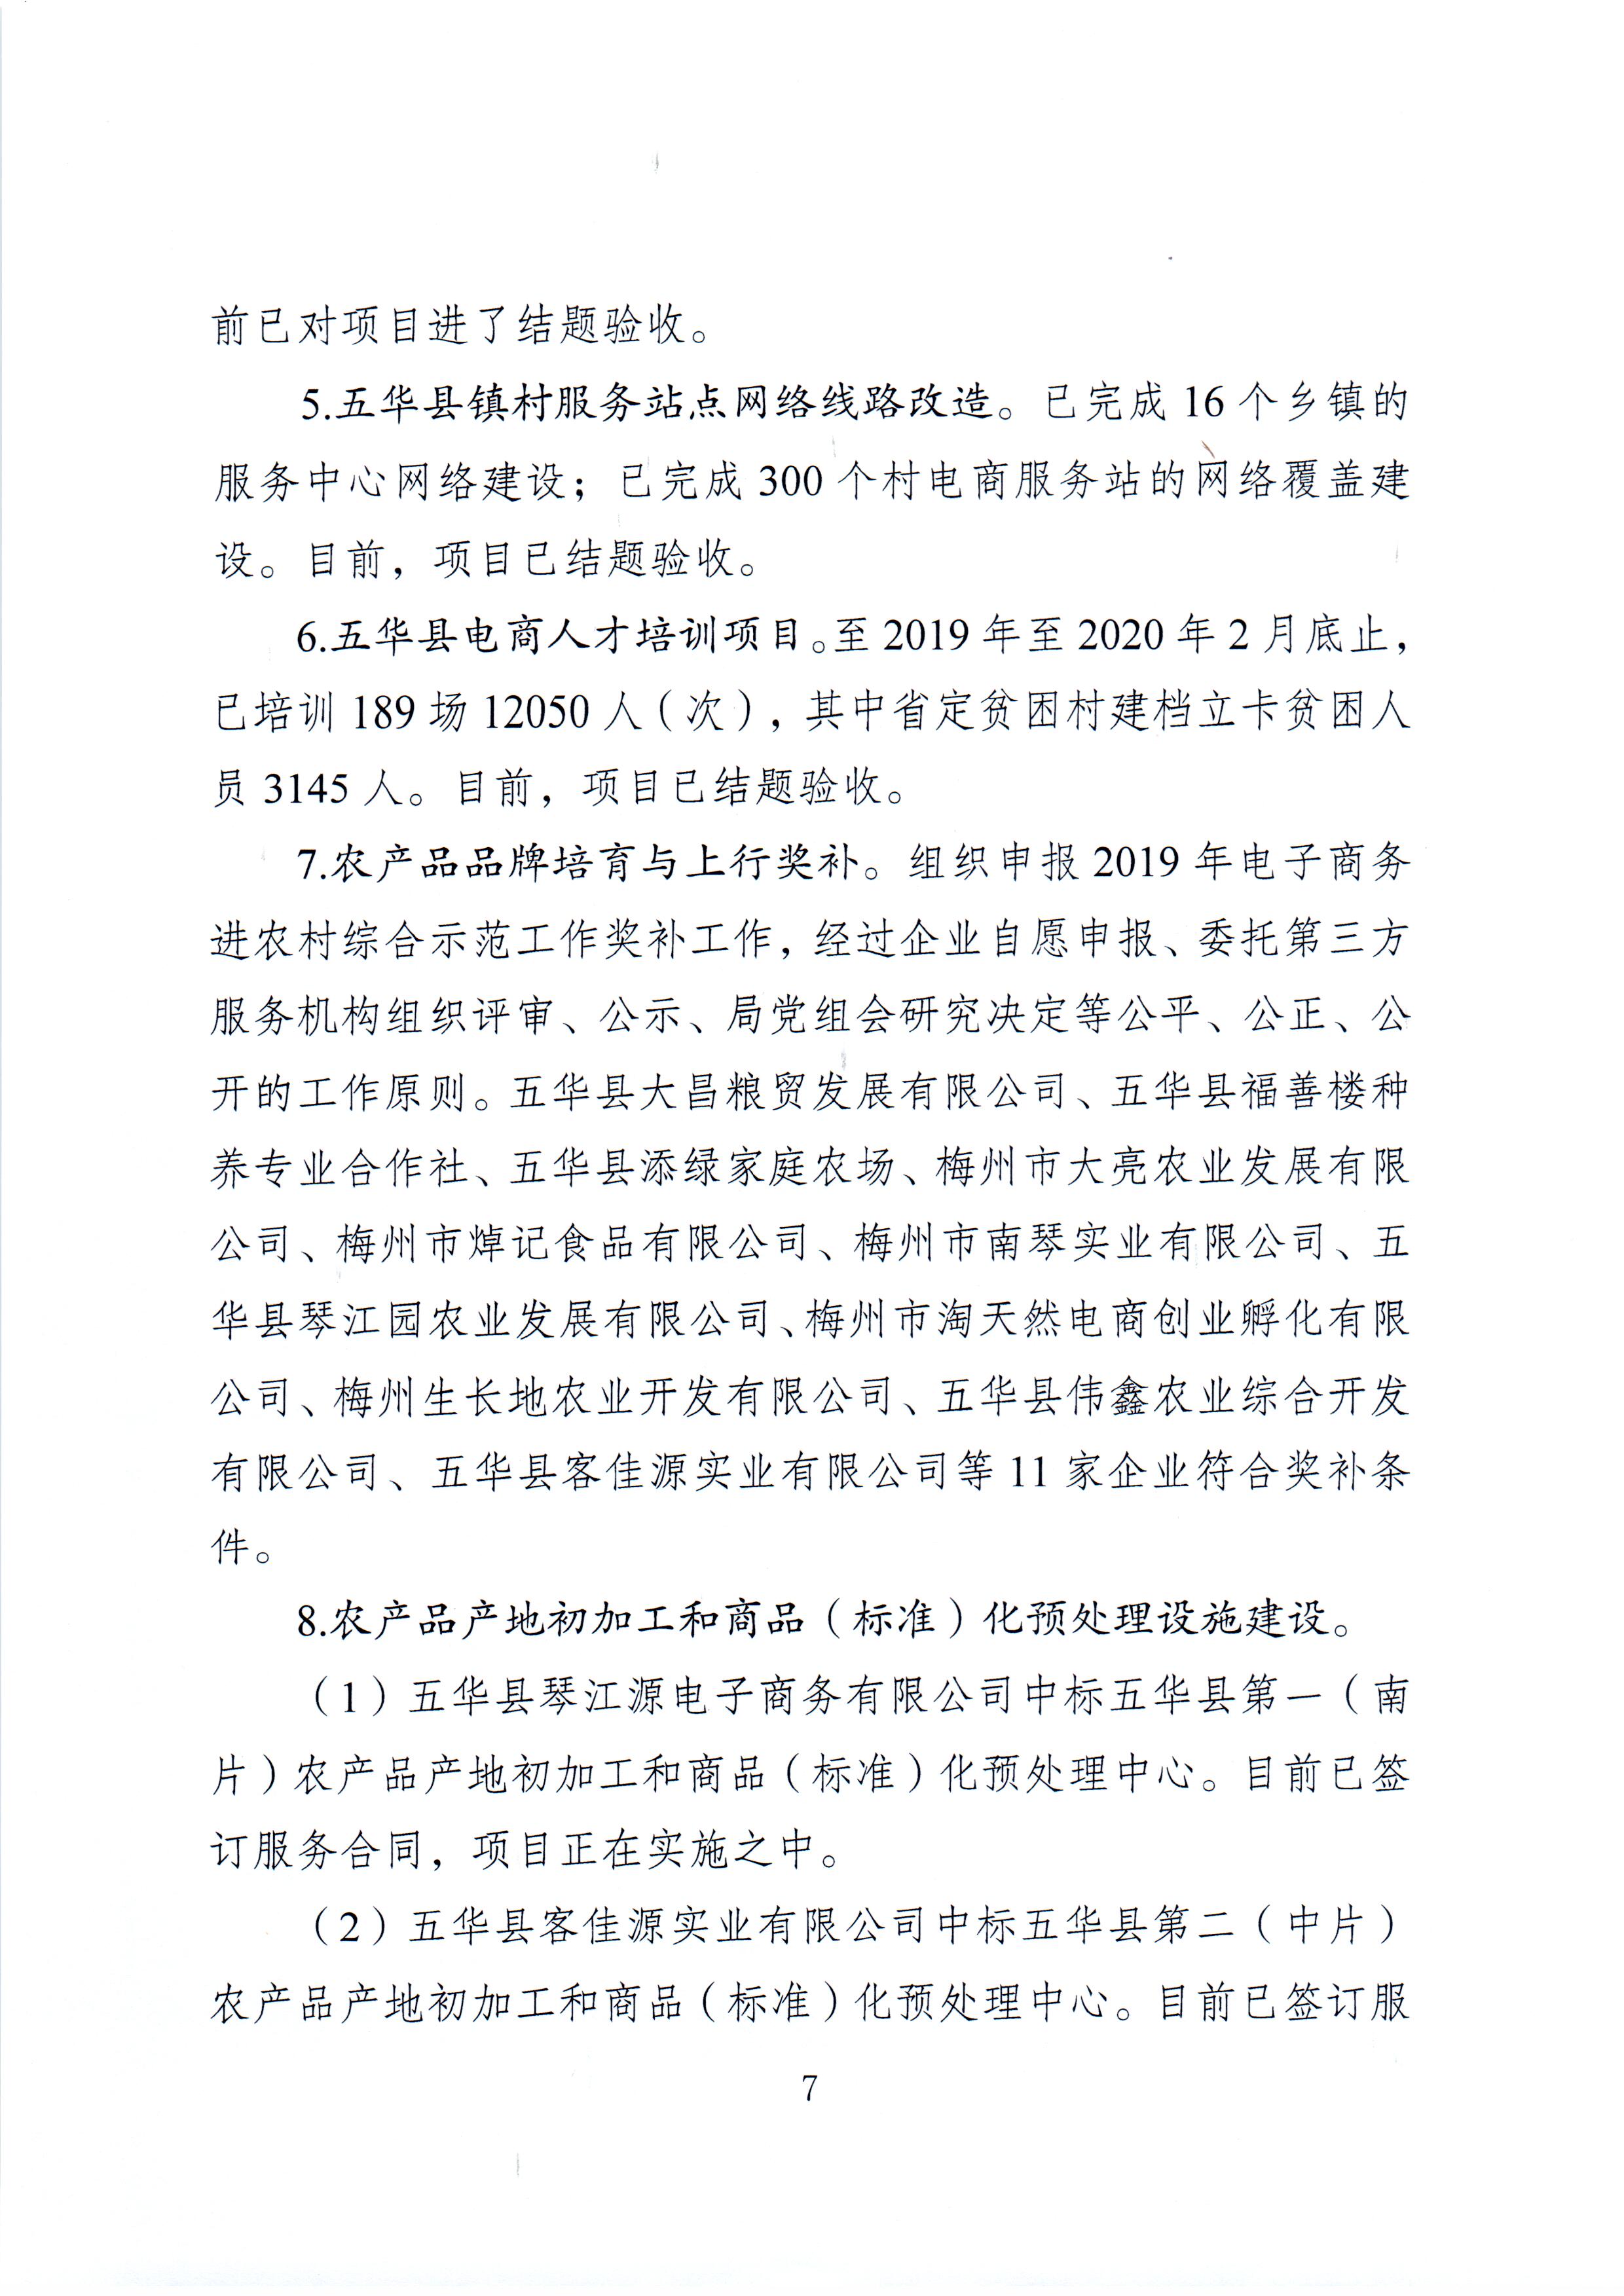 1、五华县电子商务进农村综合示范项目2021年3月工作推进情况（领导小组办公室）--（2021年4月5日确定版） (7).jpg